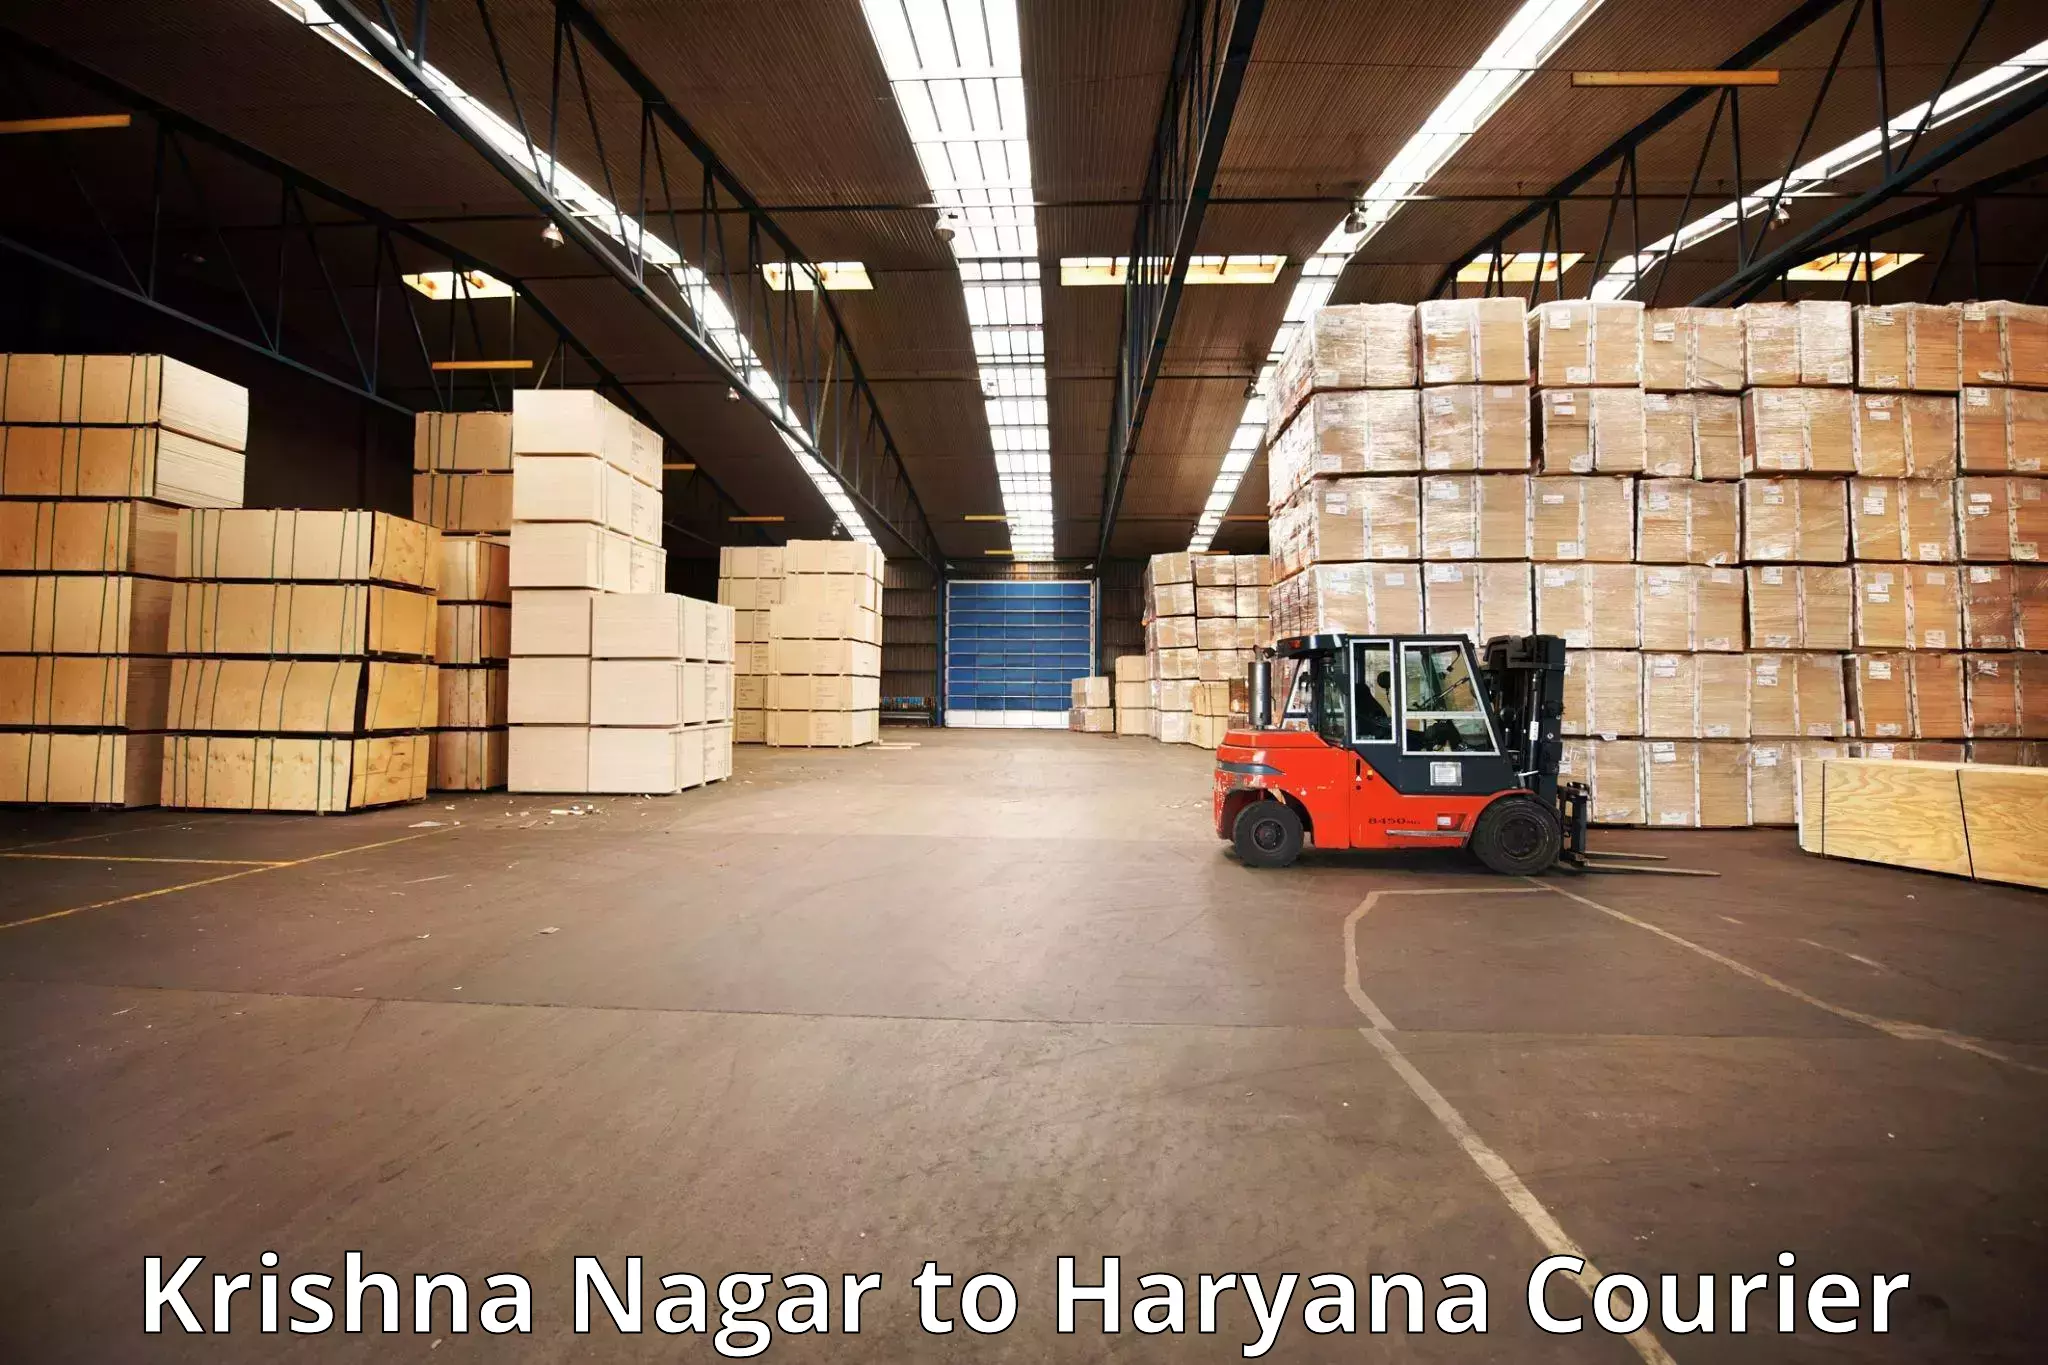 Baggage shipping schedule Krishna Nagar to Chaudhary Charan Singh Haryana Agricultural University Hisar